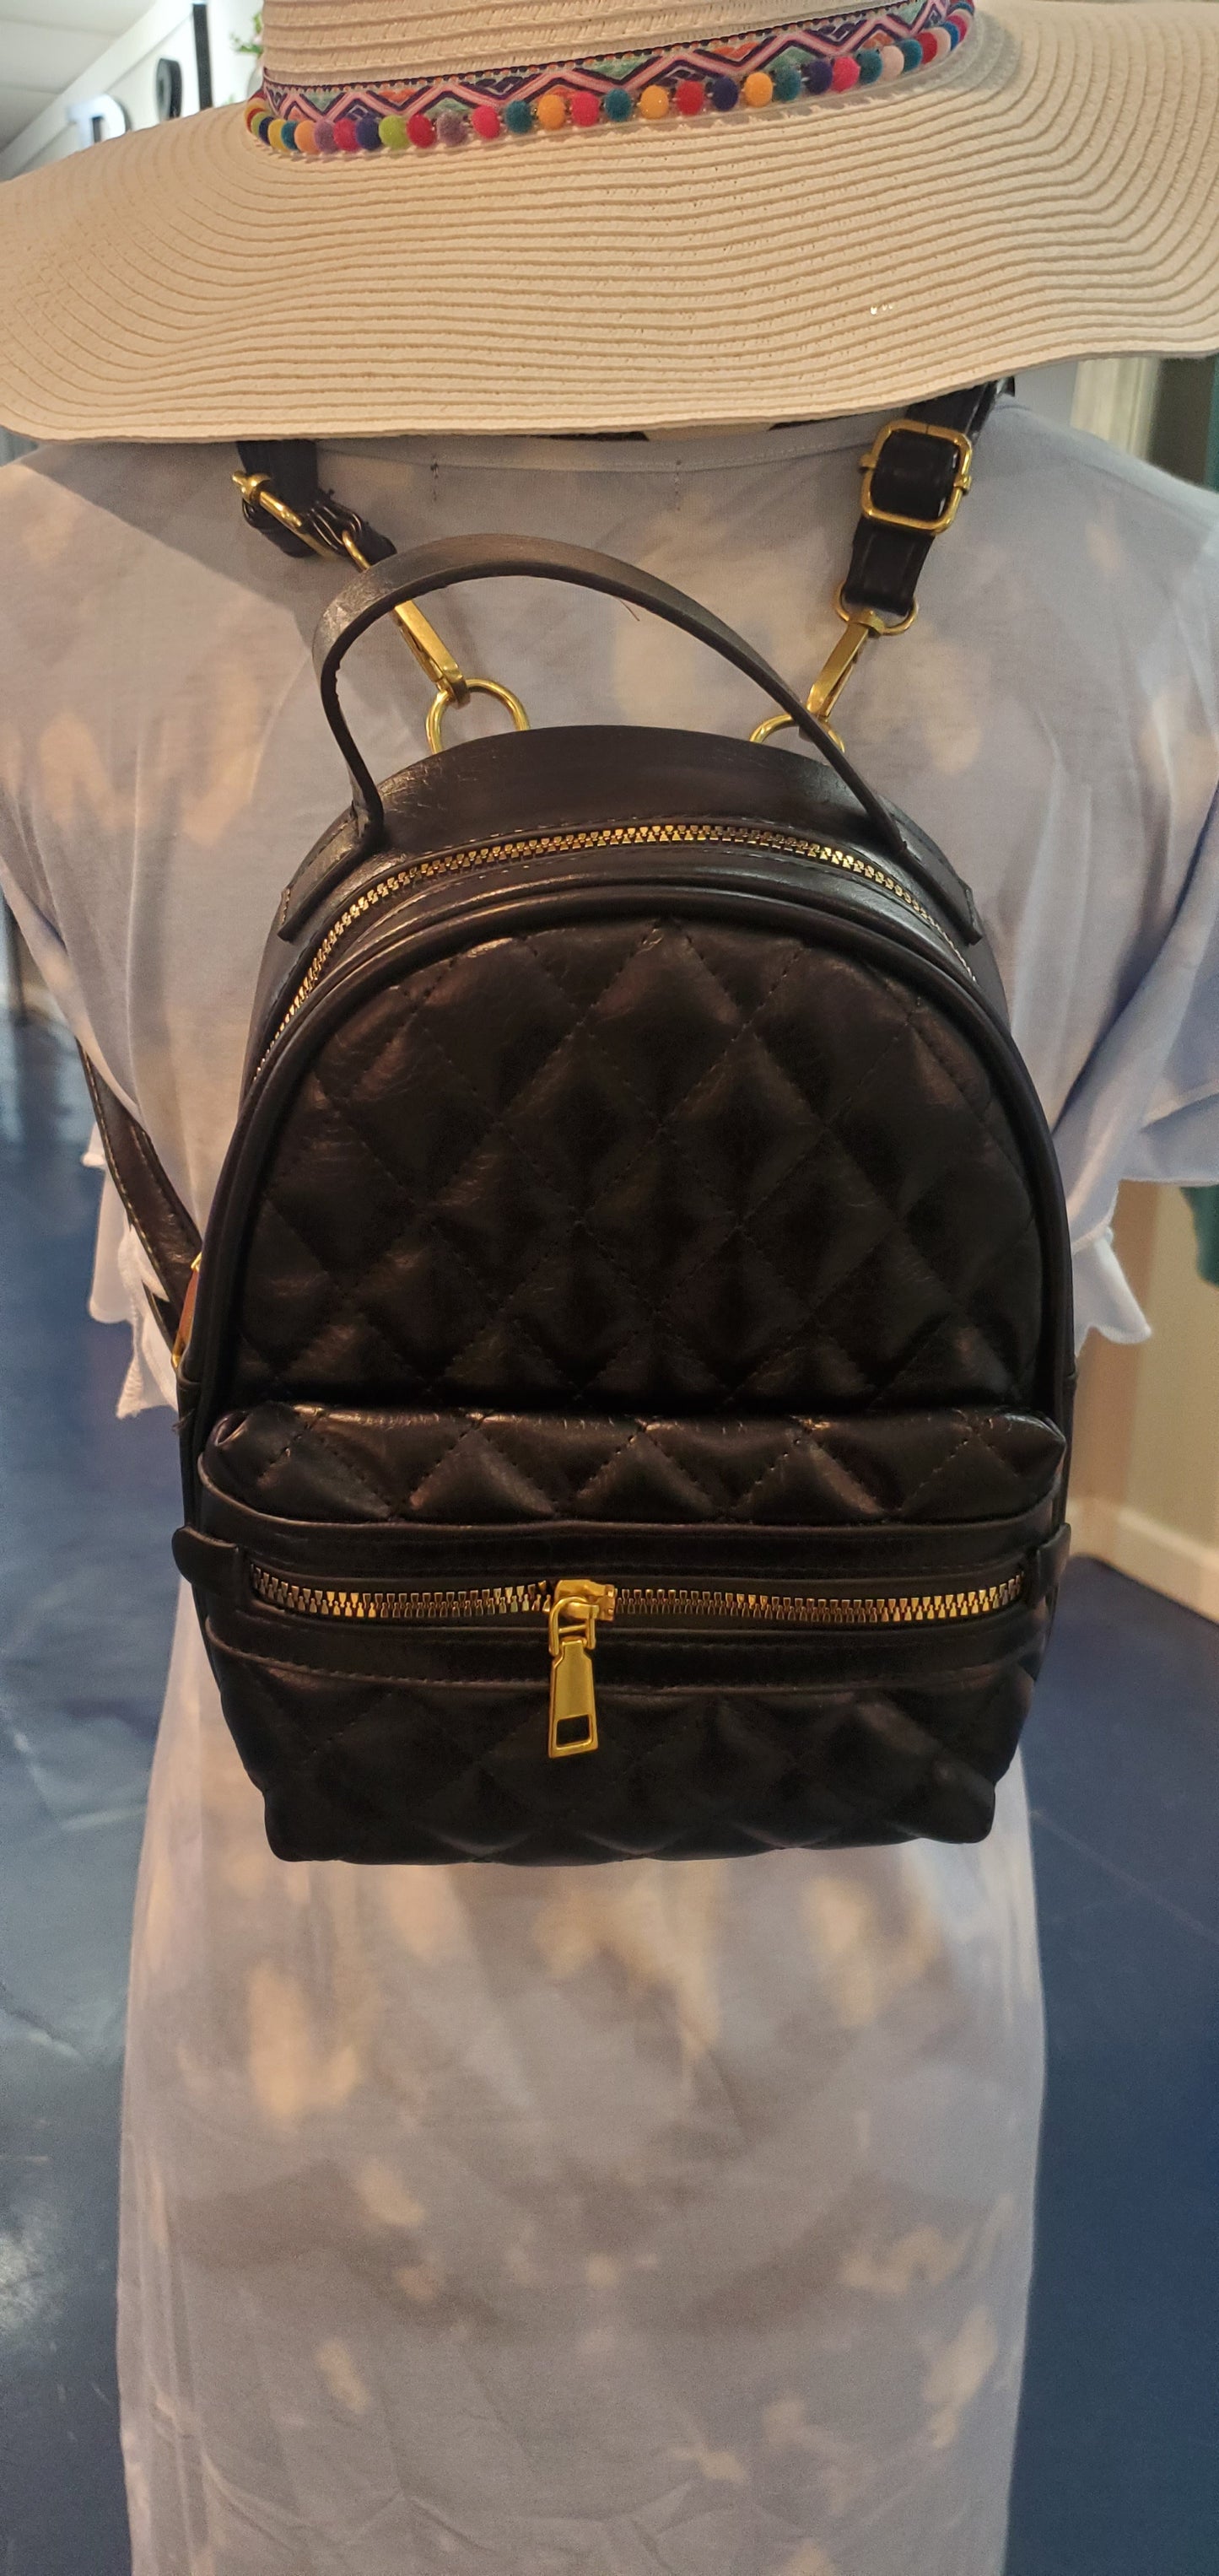 The Kylie Mini Backpack